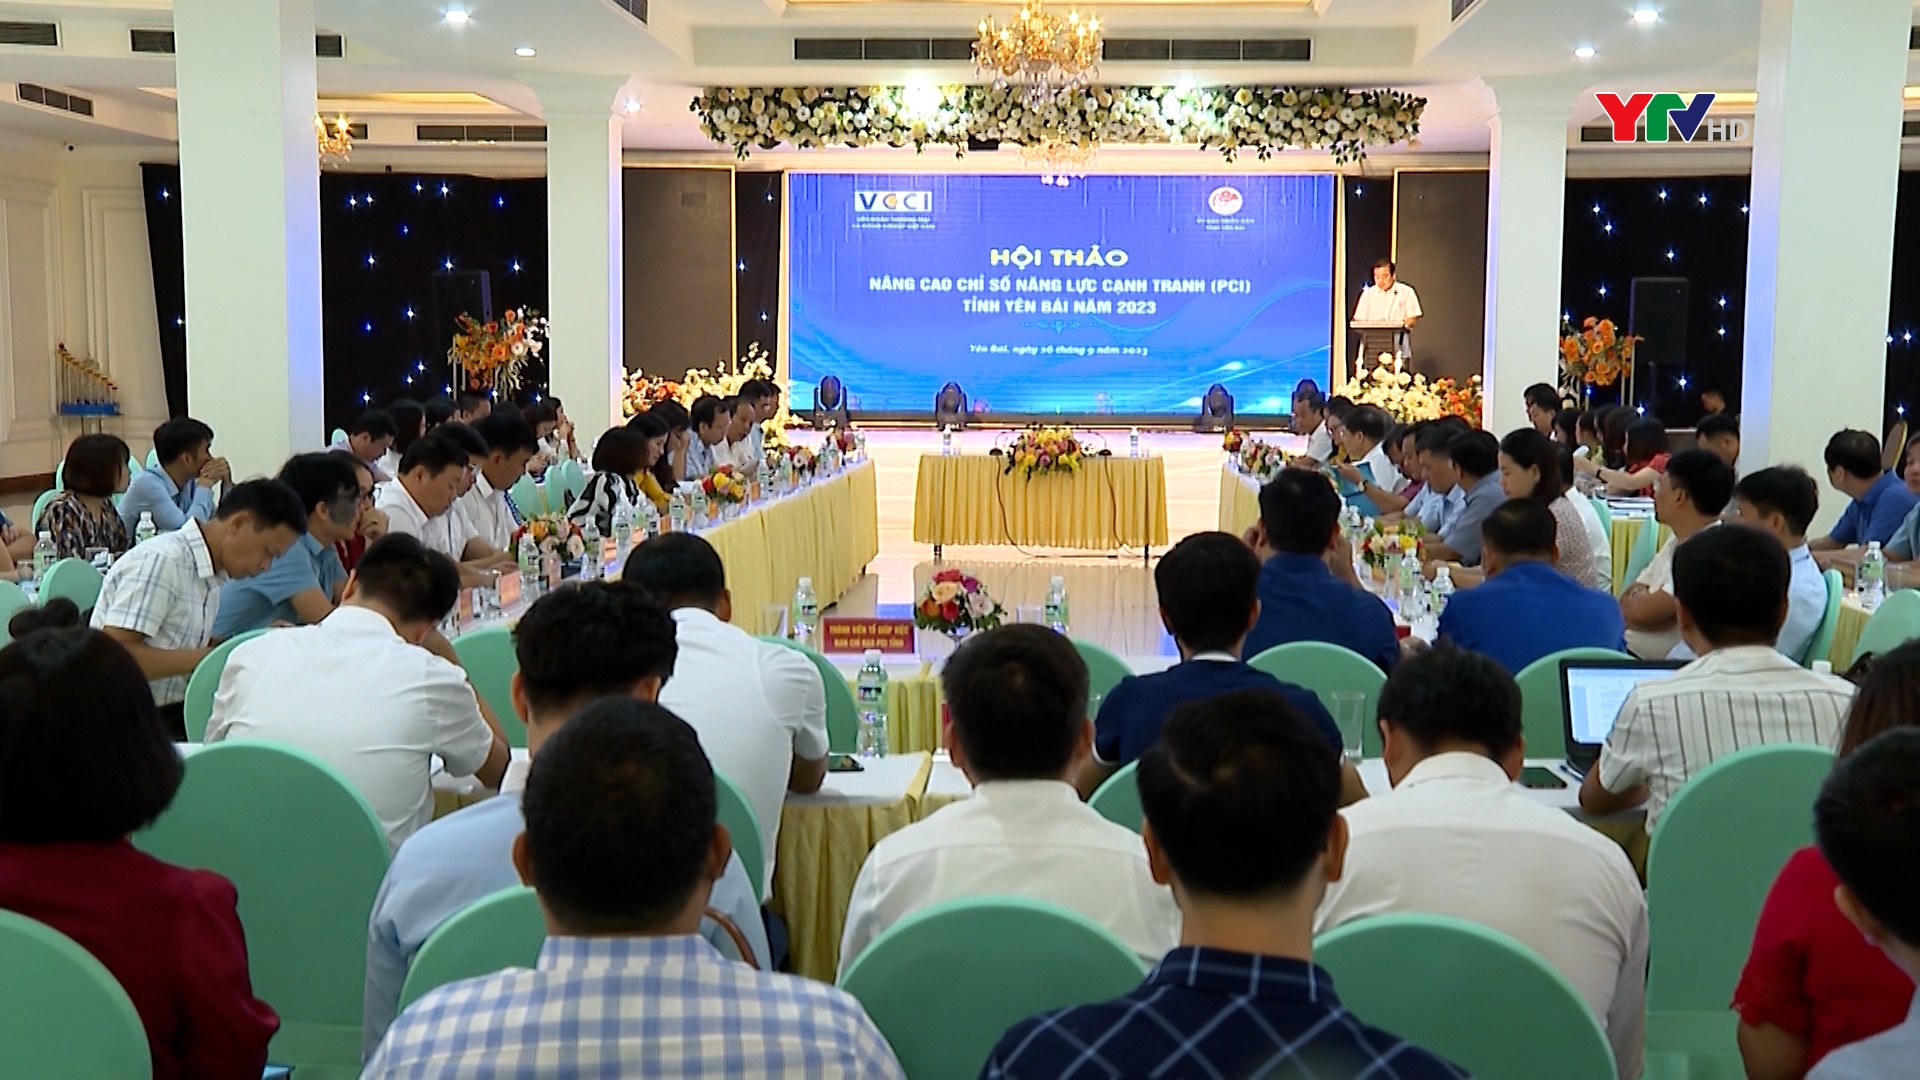 Hội thảo "Cải thiện môi trường kinh doanh và nâng cao năng lực cạnh tranh tỉnh Yên Bái năm 2023"